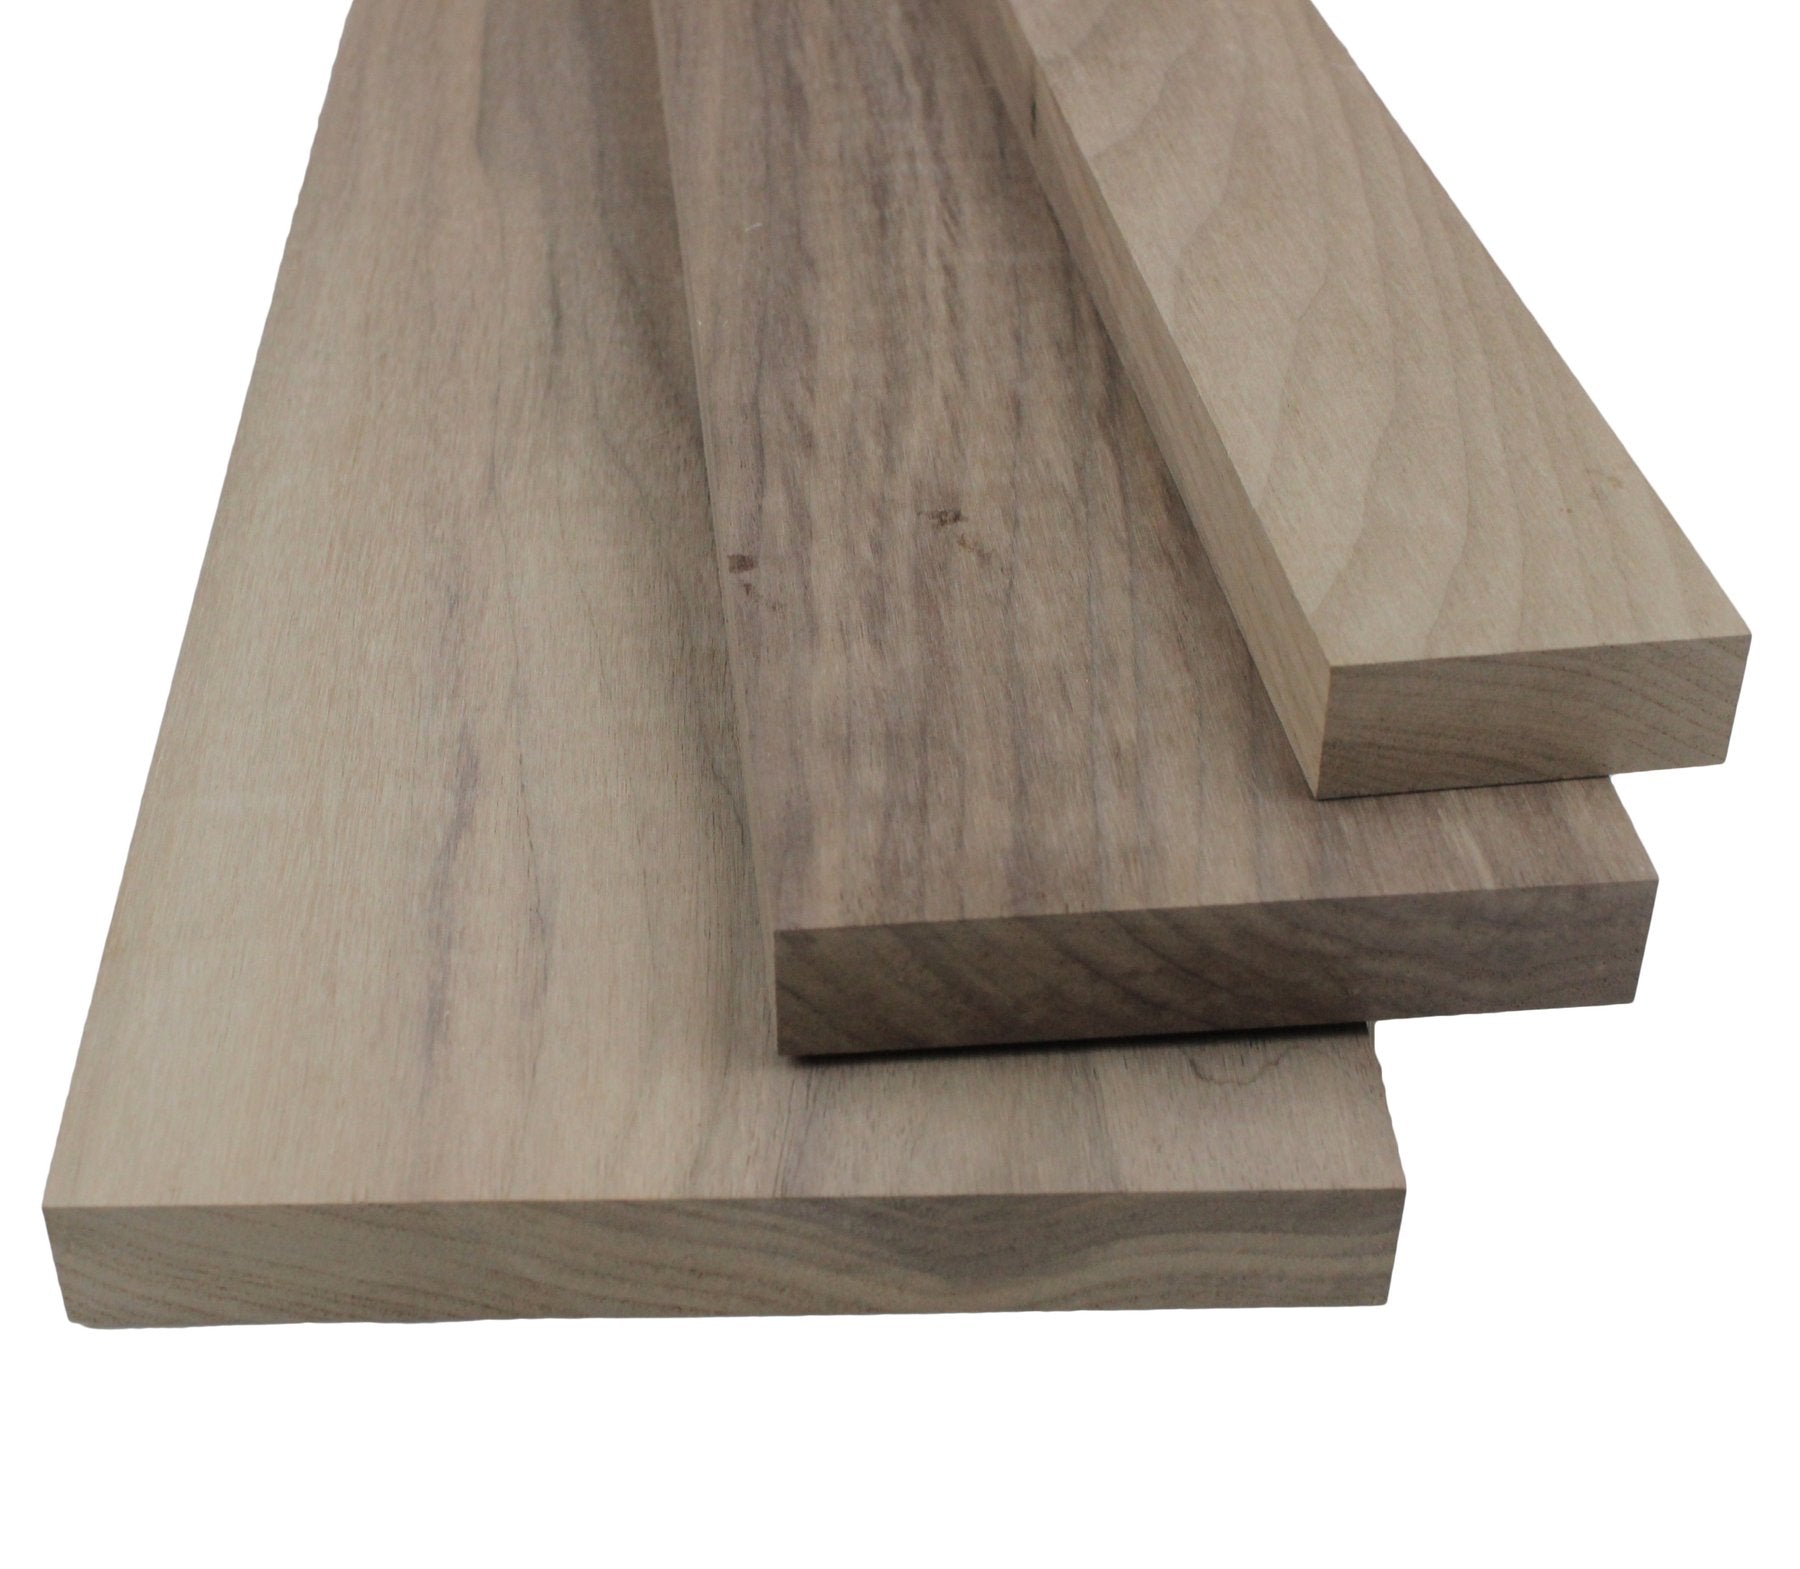 What is S4S Hardwood Lumber